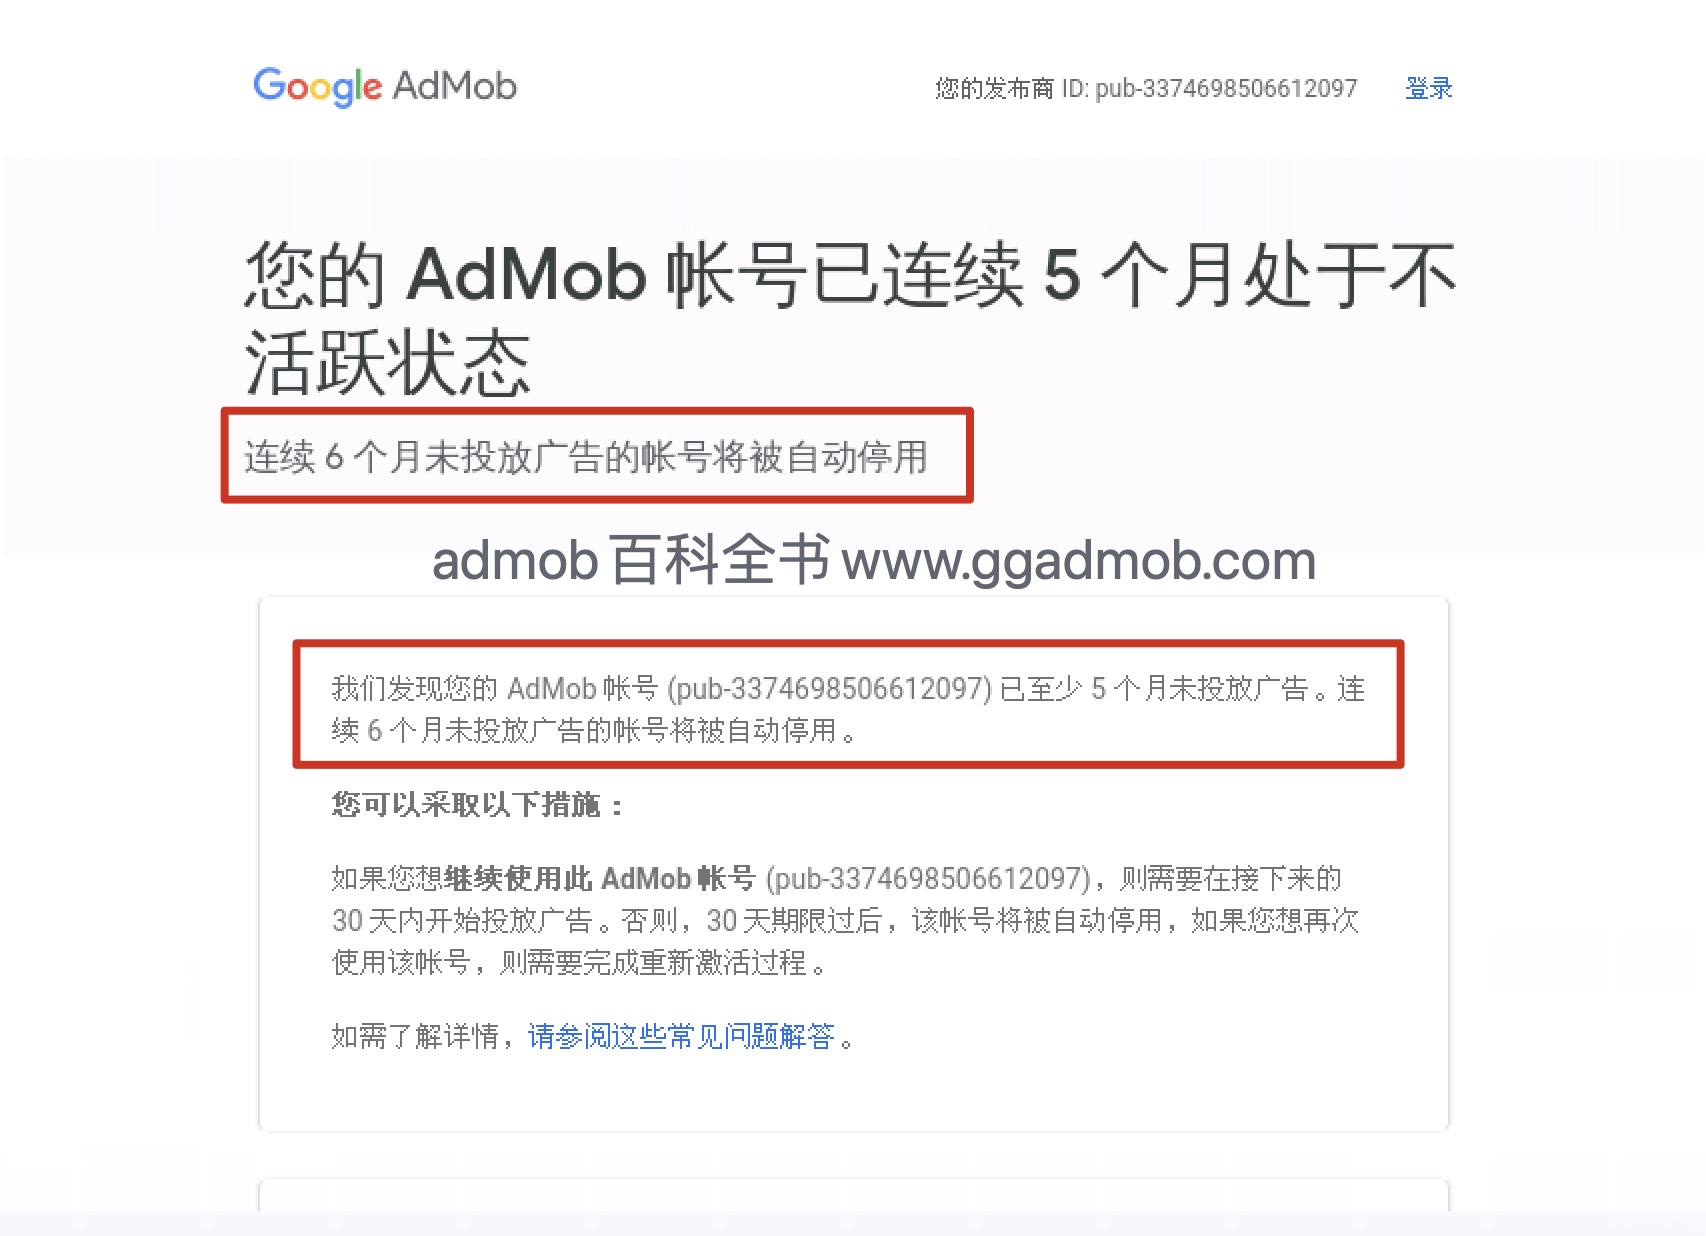 您的AdMob账号处于不活跃状态，连续6个月未投放广告的账号将被停用